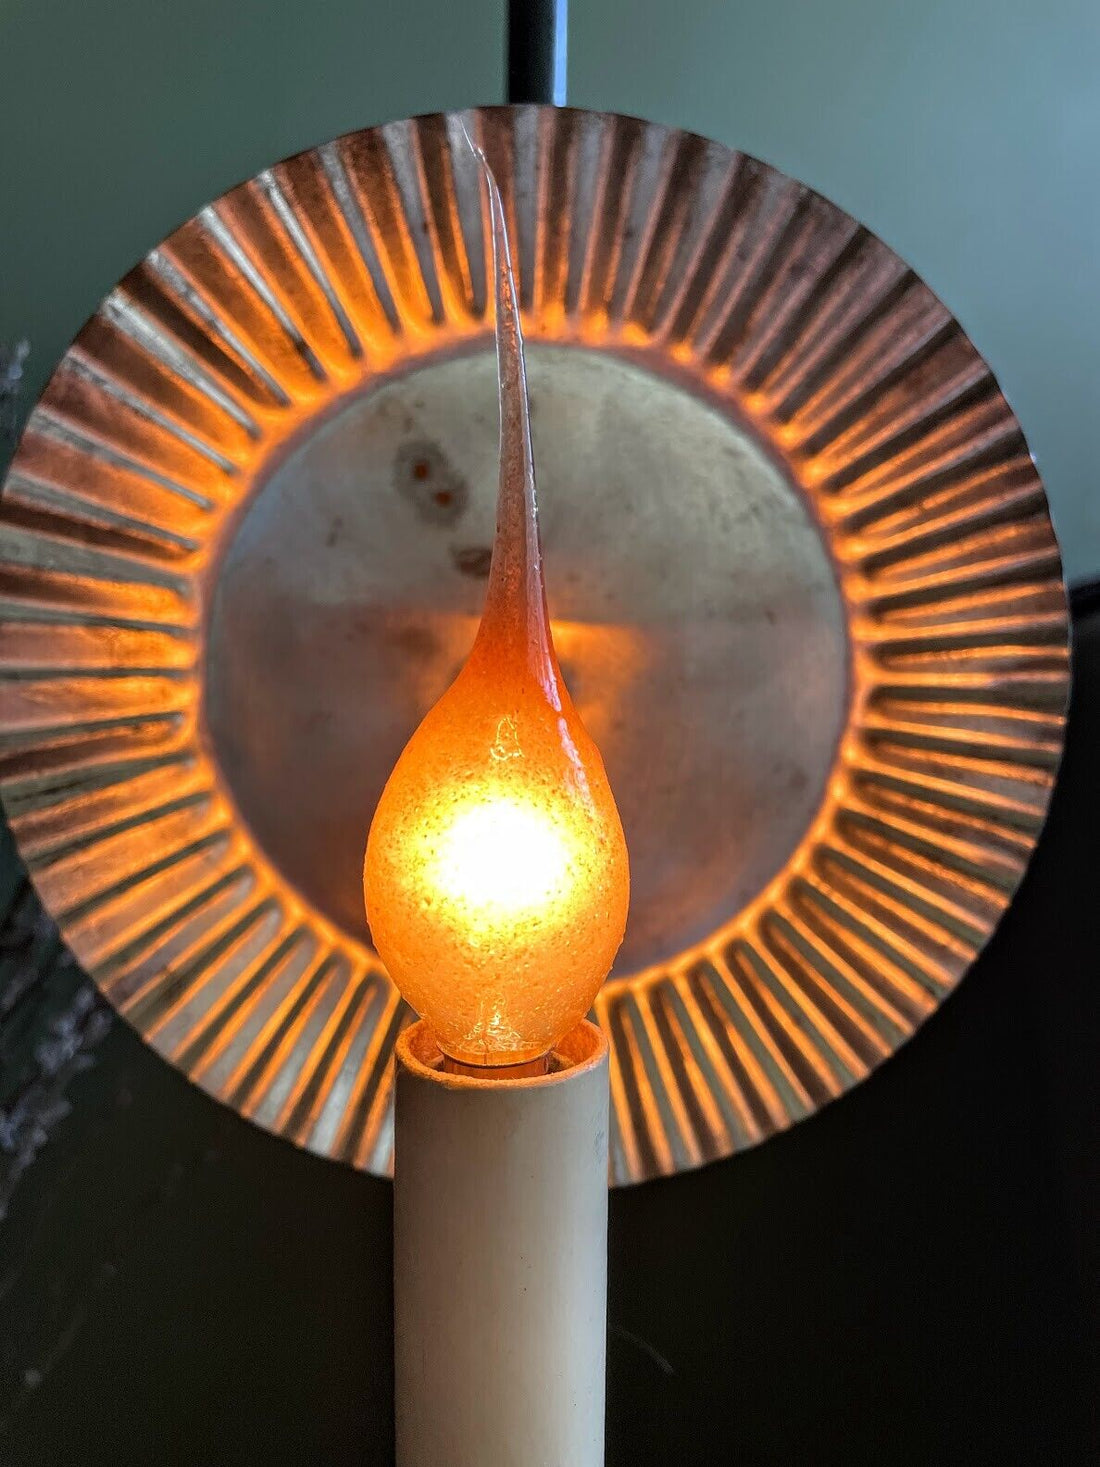 Primitive/Farmhouse 5 watt Rustic Silicone Light Bulb - The Primitive Pineapple Collection